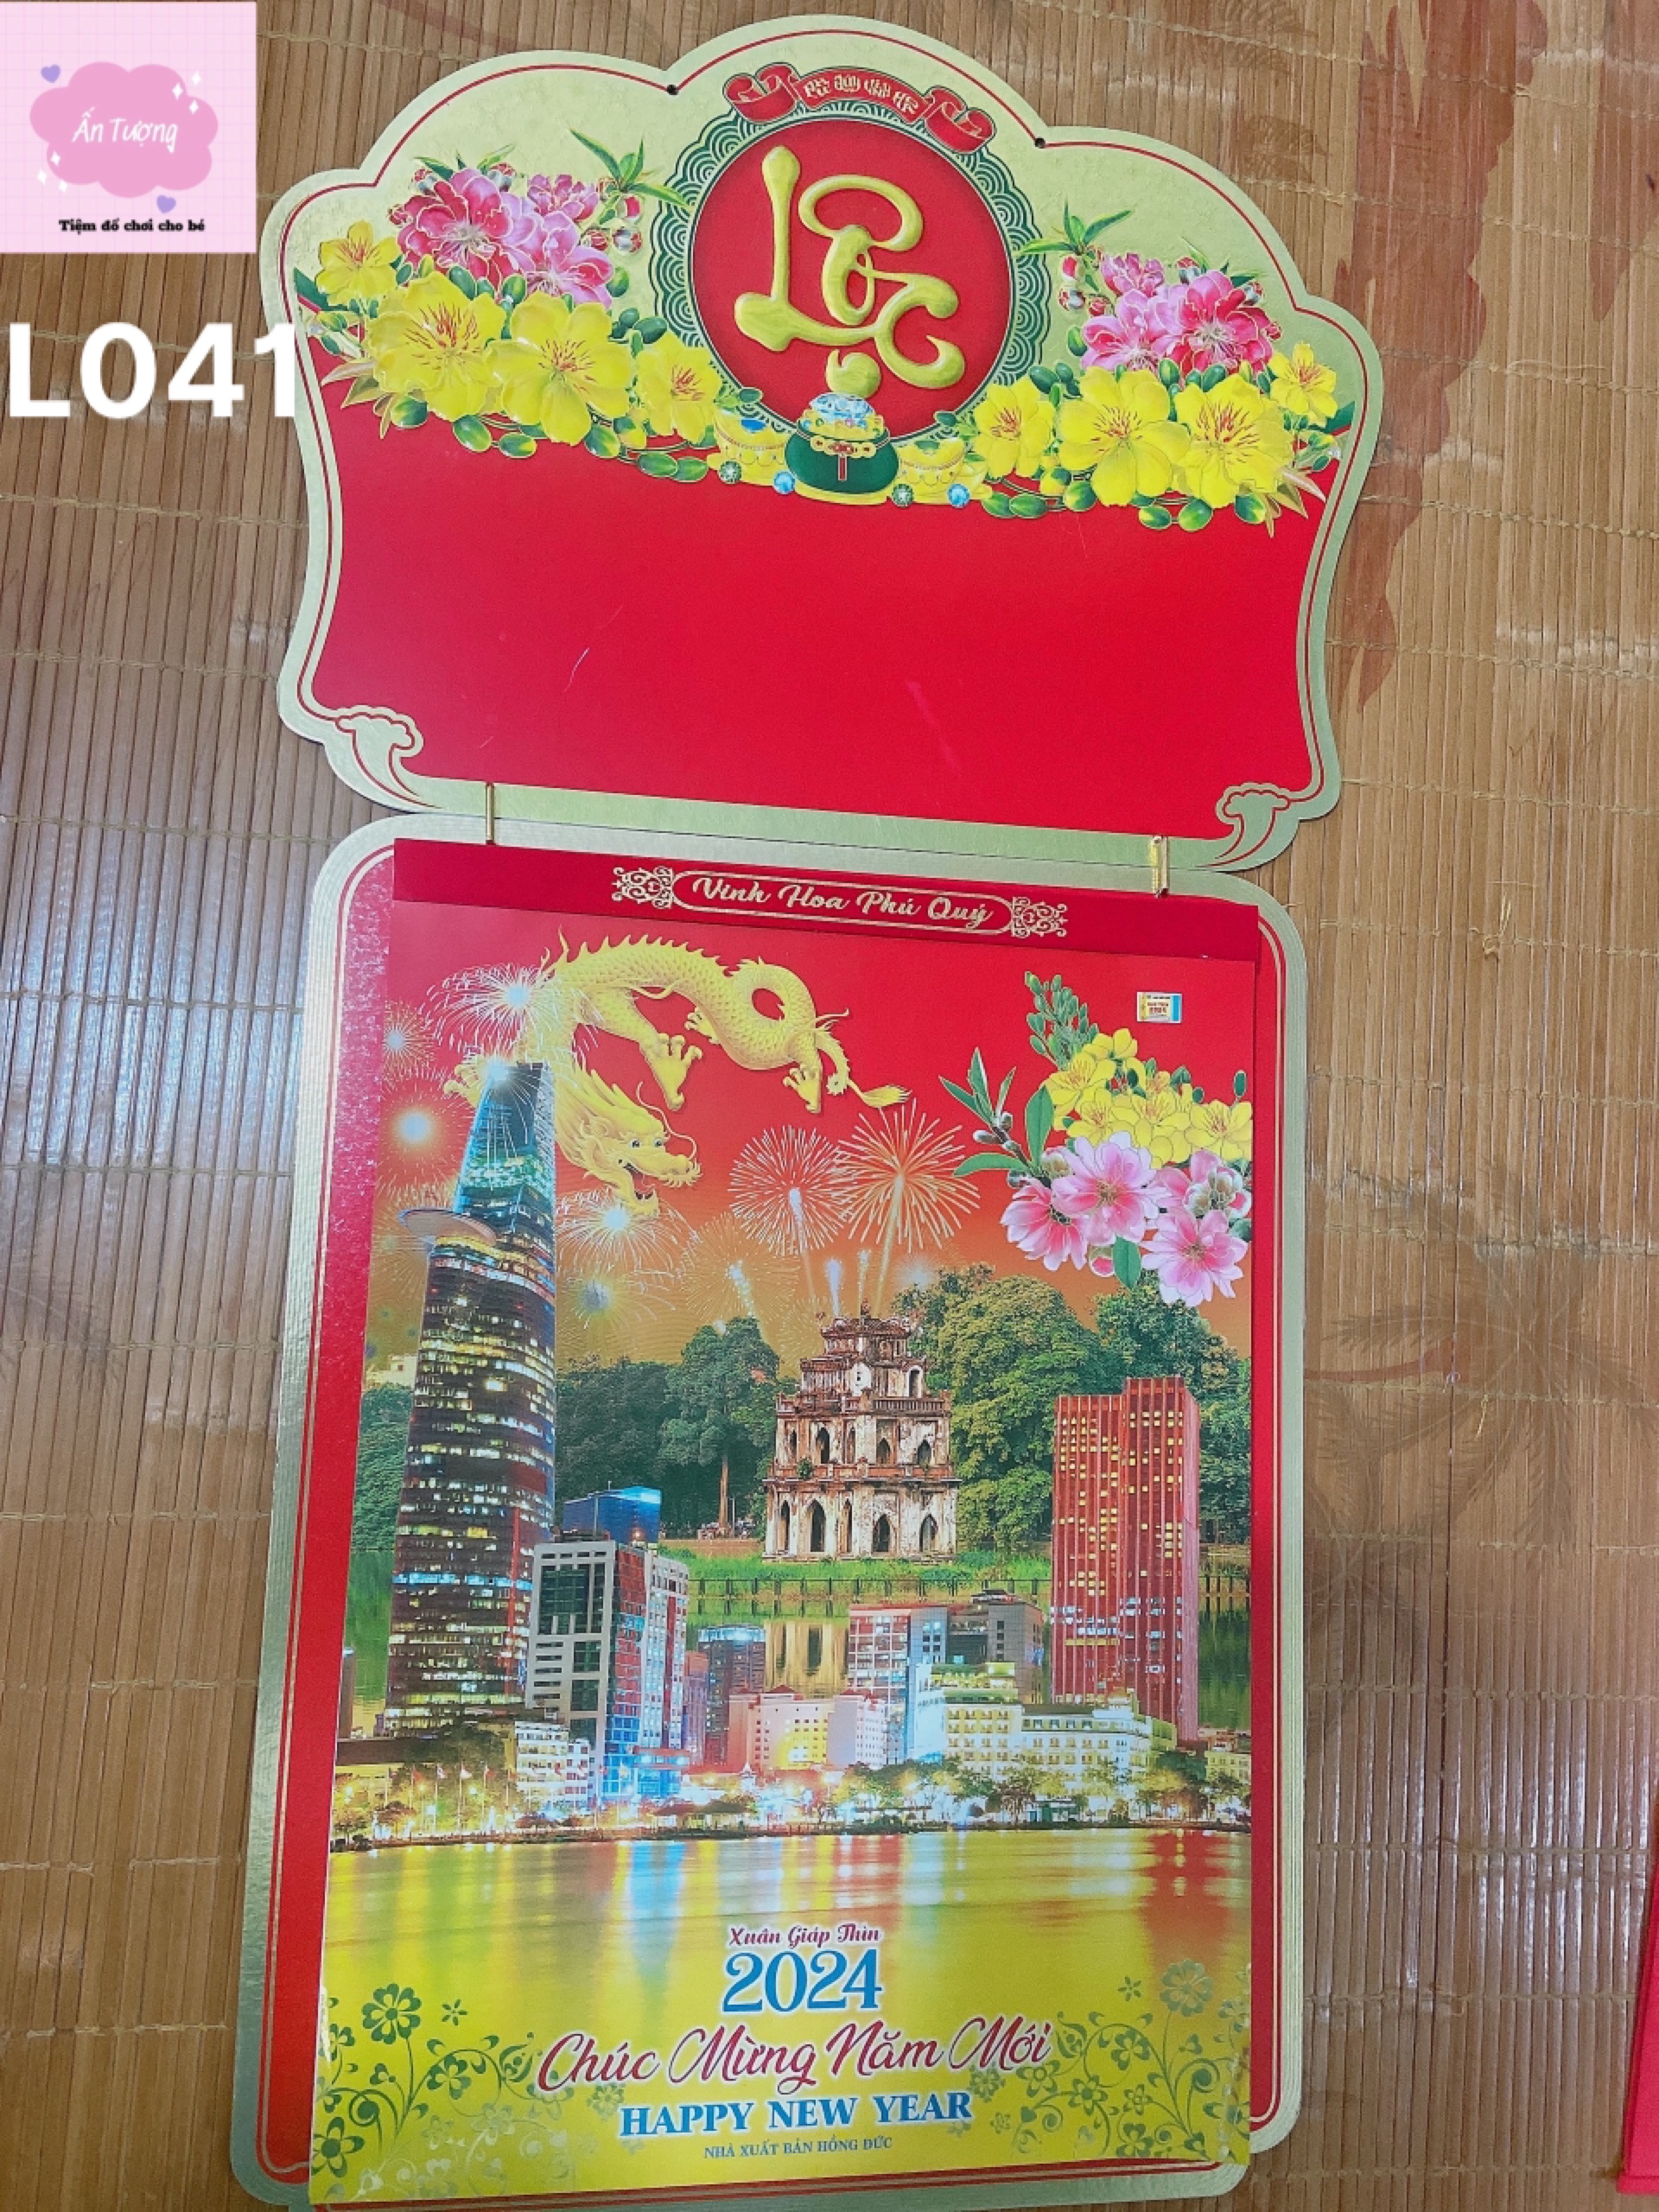 (Mua lịch tặng lịch) Bộ lịch Giáp Thìn 2024 - Lịch Bloc Siêu Cực Đại (38x53 cm)- chủ đề " Việt Nam Thanh Bình”